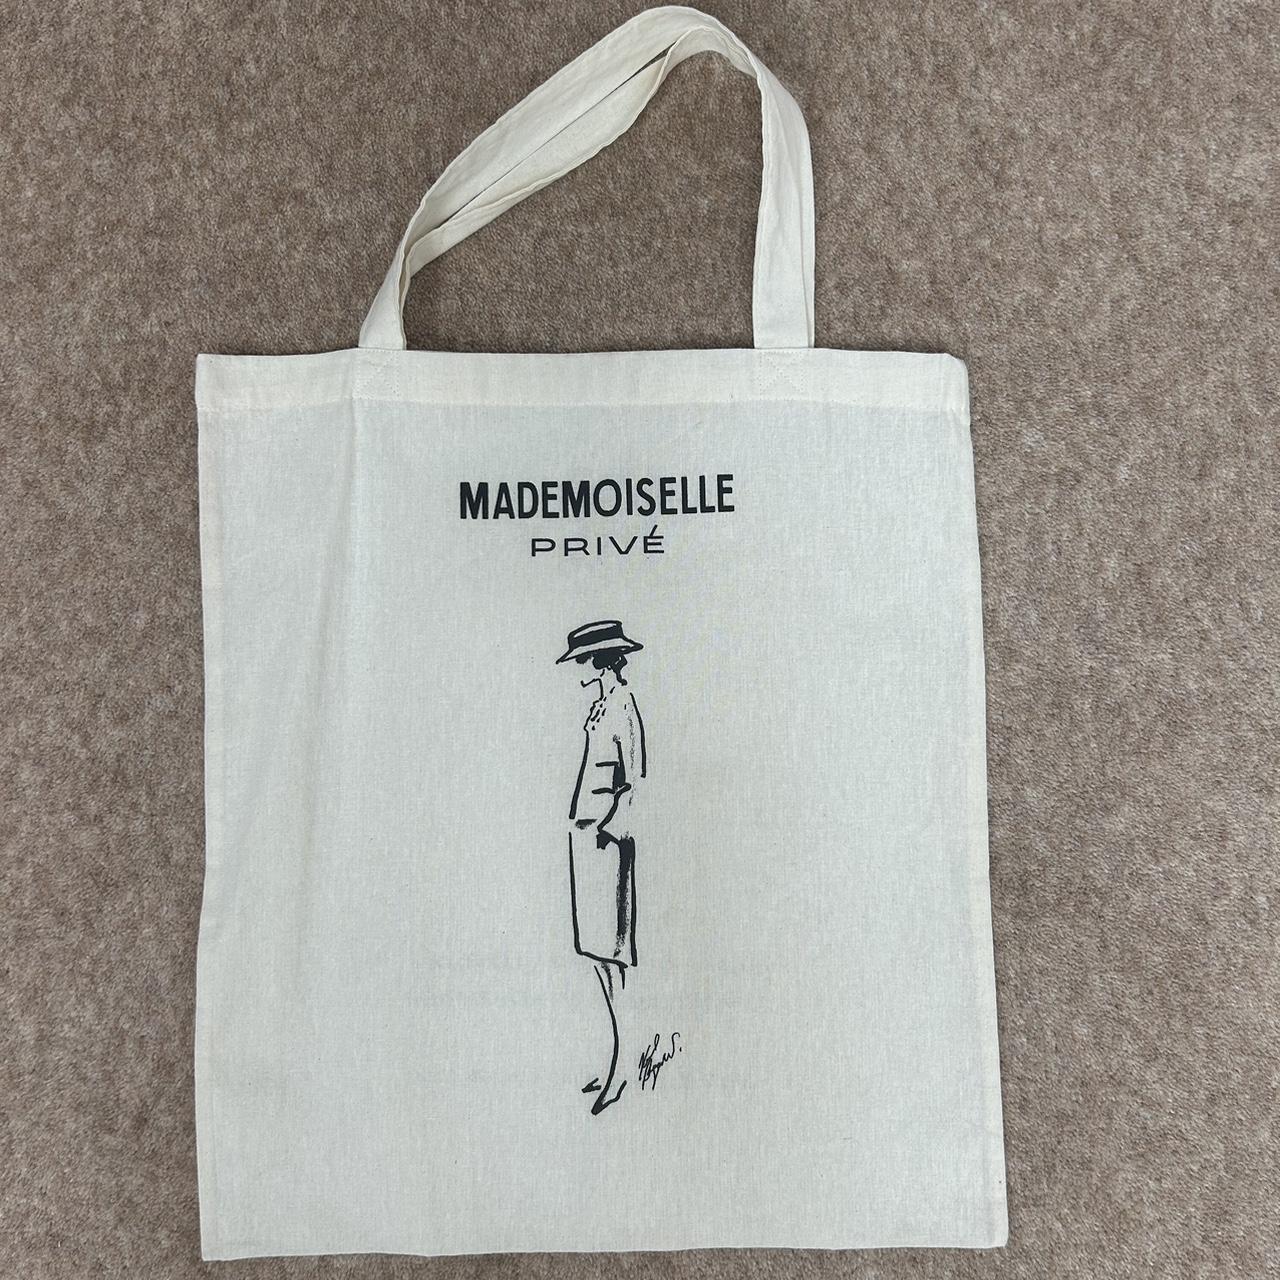 Lot - CHANEL 2015 Tote bag Toile imprimée Créé à l'occasion de l'exposition  Mademoiselle Privé à la Saatchi Gallery à Londres - Catalog# 735984  Chanel Vintage Online